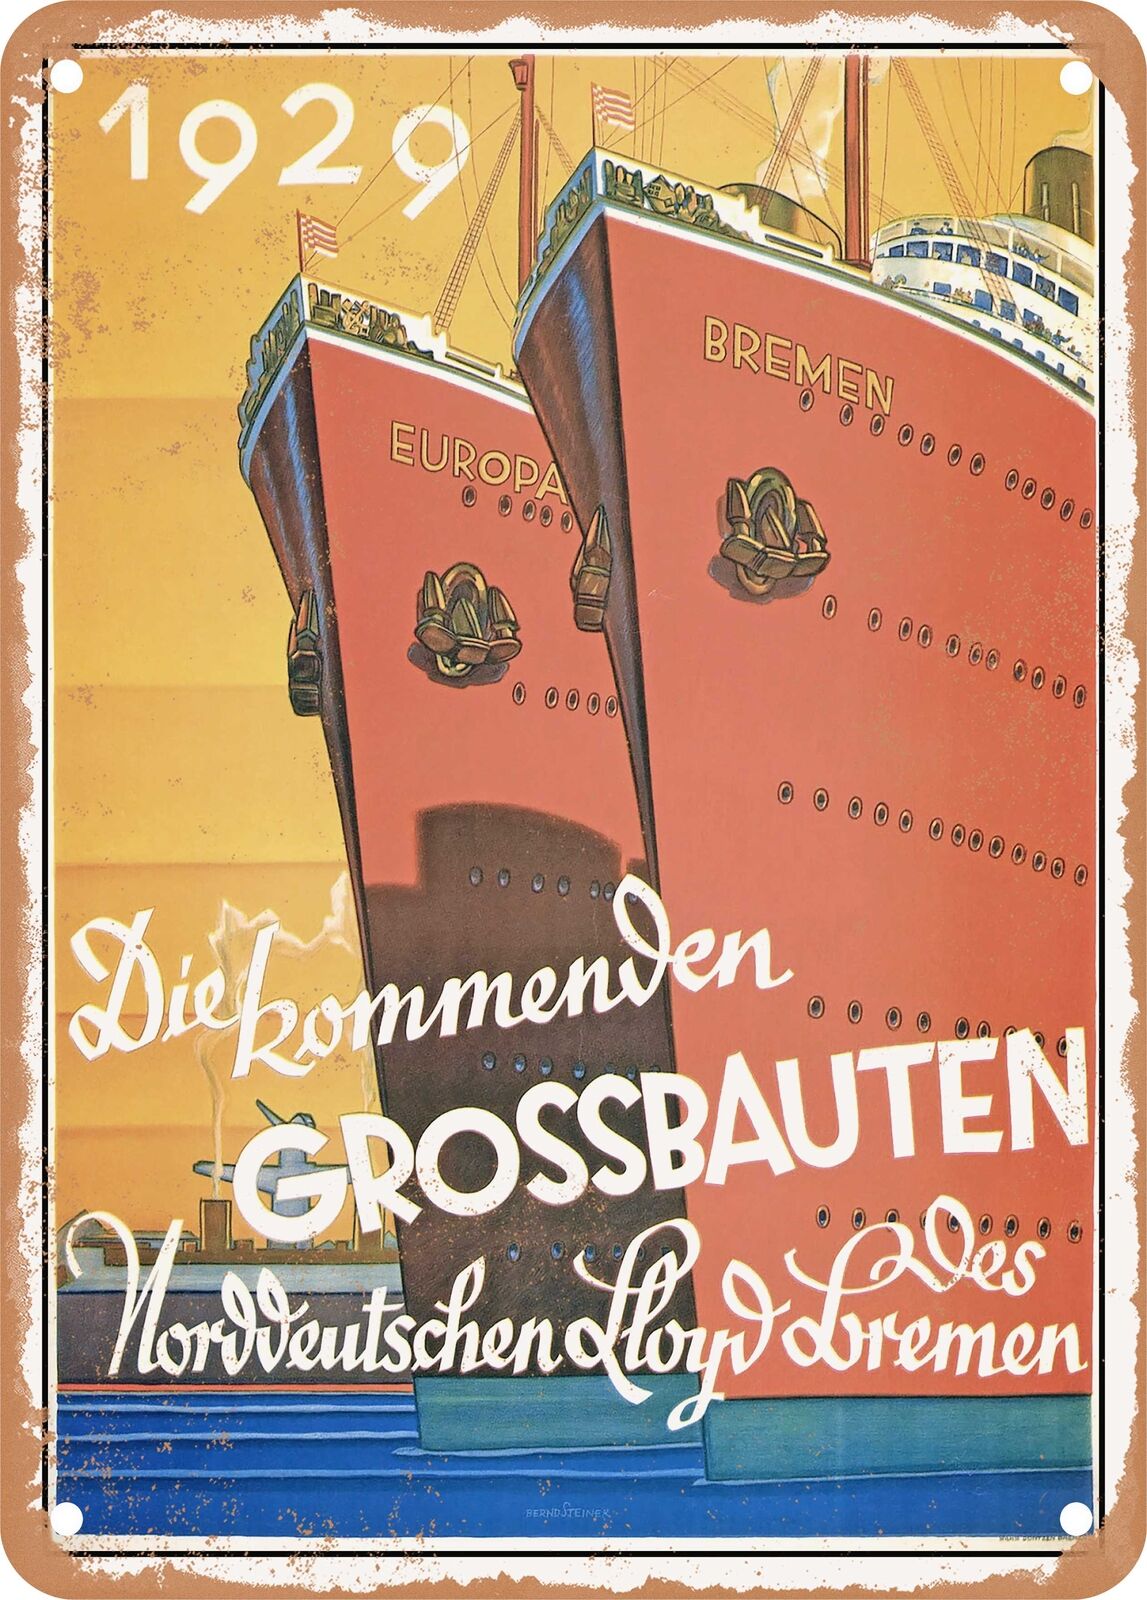 METAL SIGN - 1929 The upcoming grand buildings Norddeutscher Lloyd Bremen